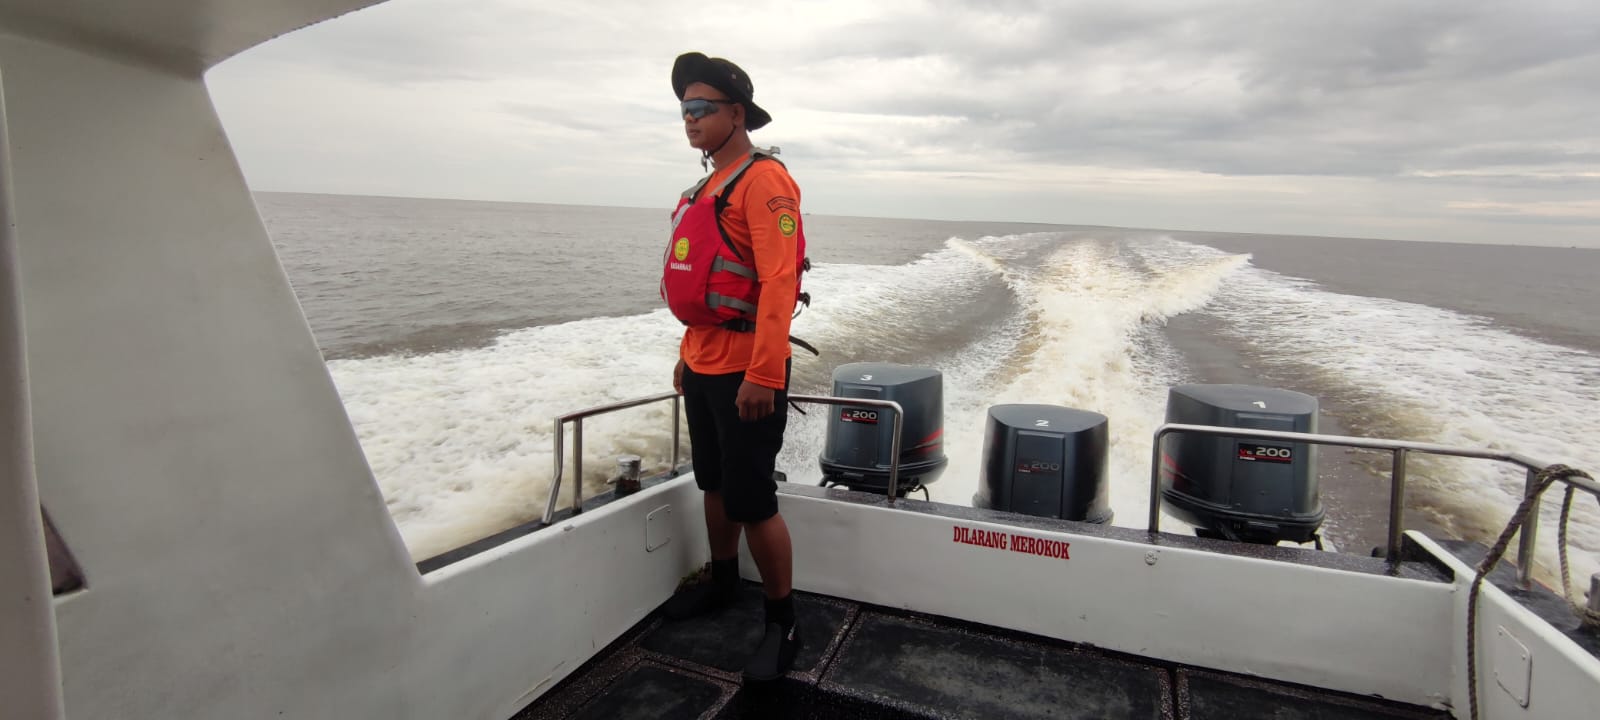 Jatuh dari Kapal di Perairan Selat Malaka, ABK Dilaporkan Hilang